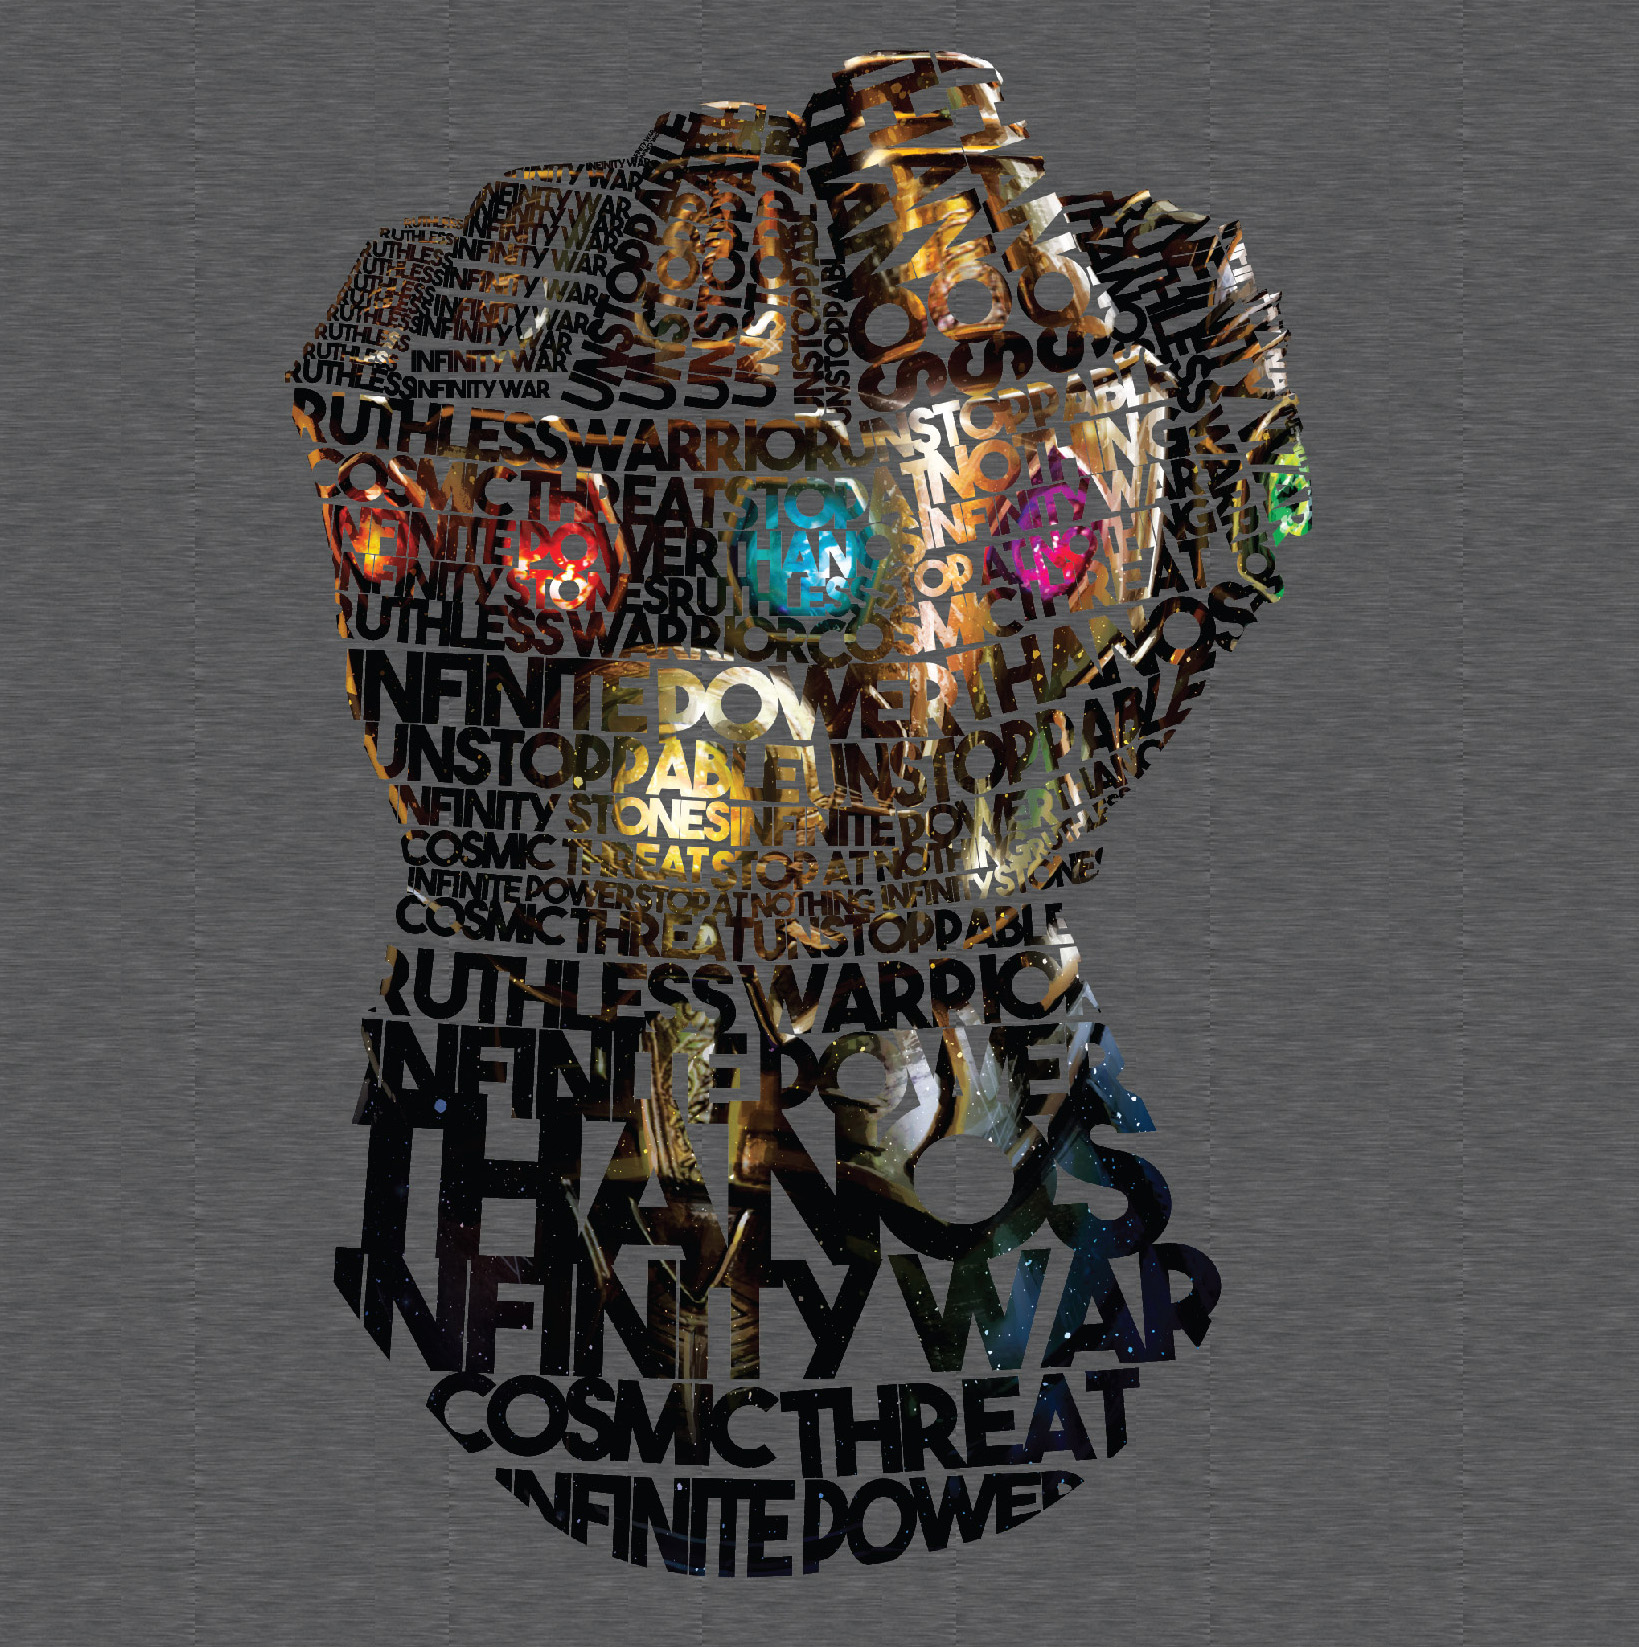 Avengers: Infinity Gauntlet image